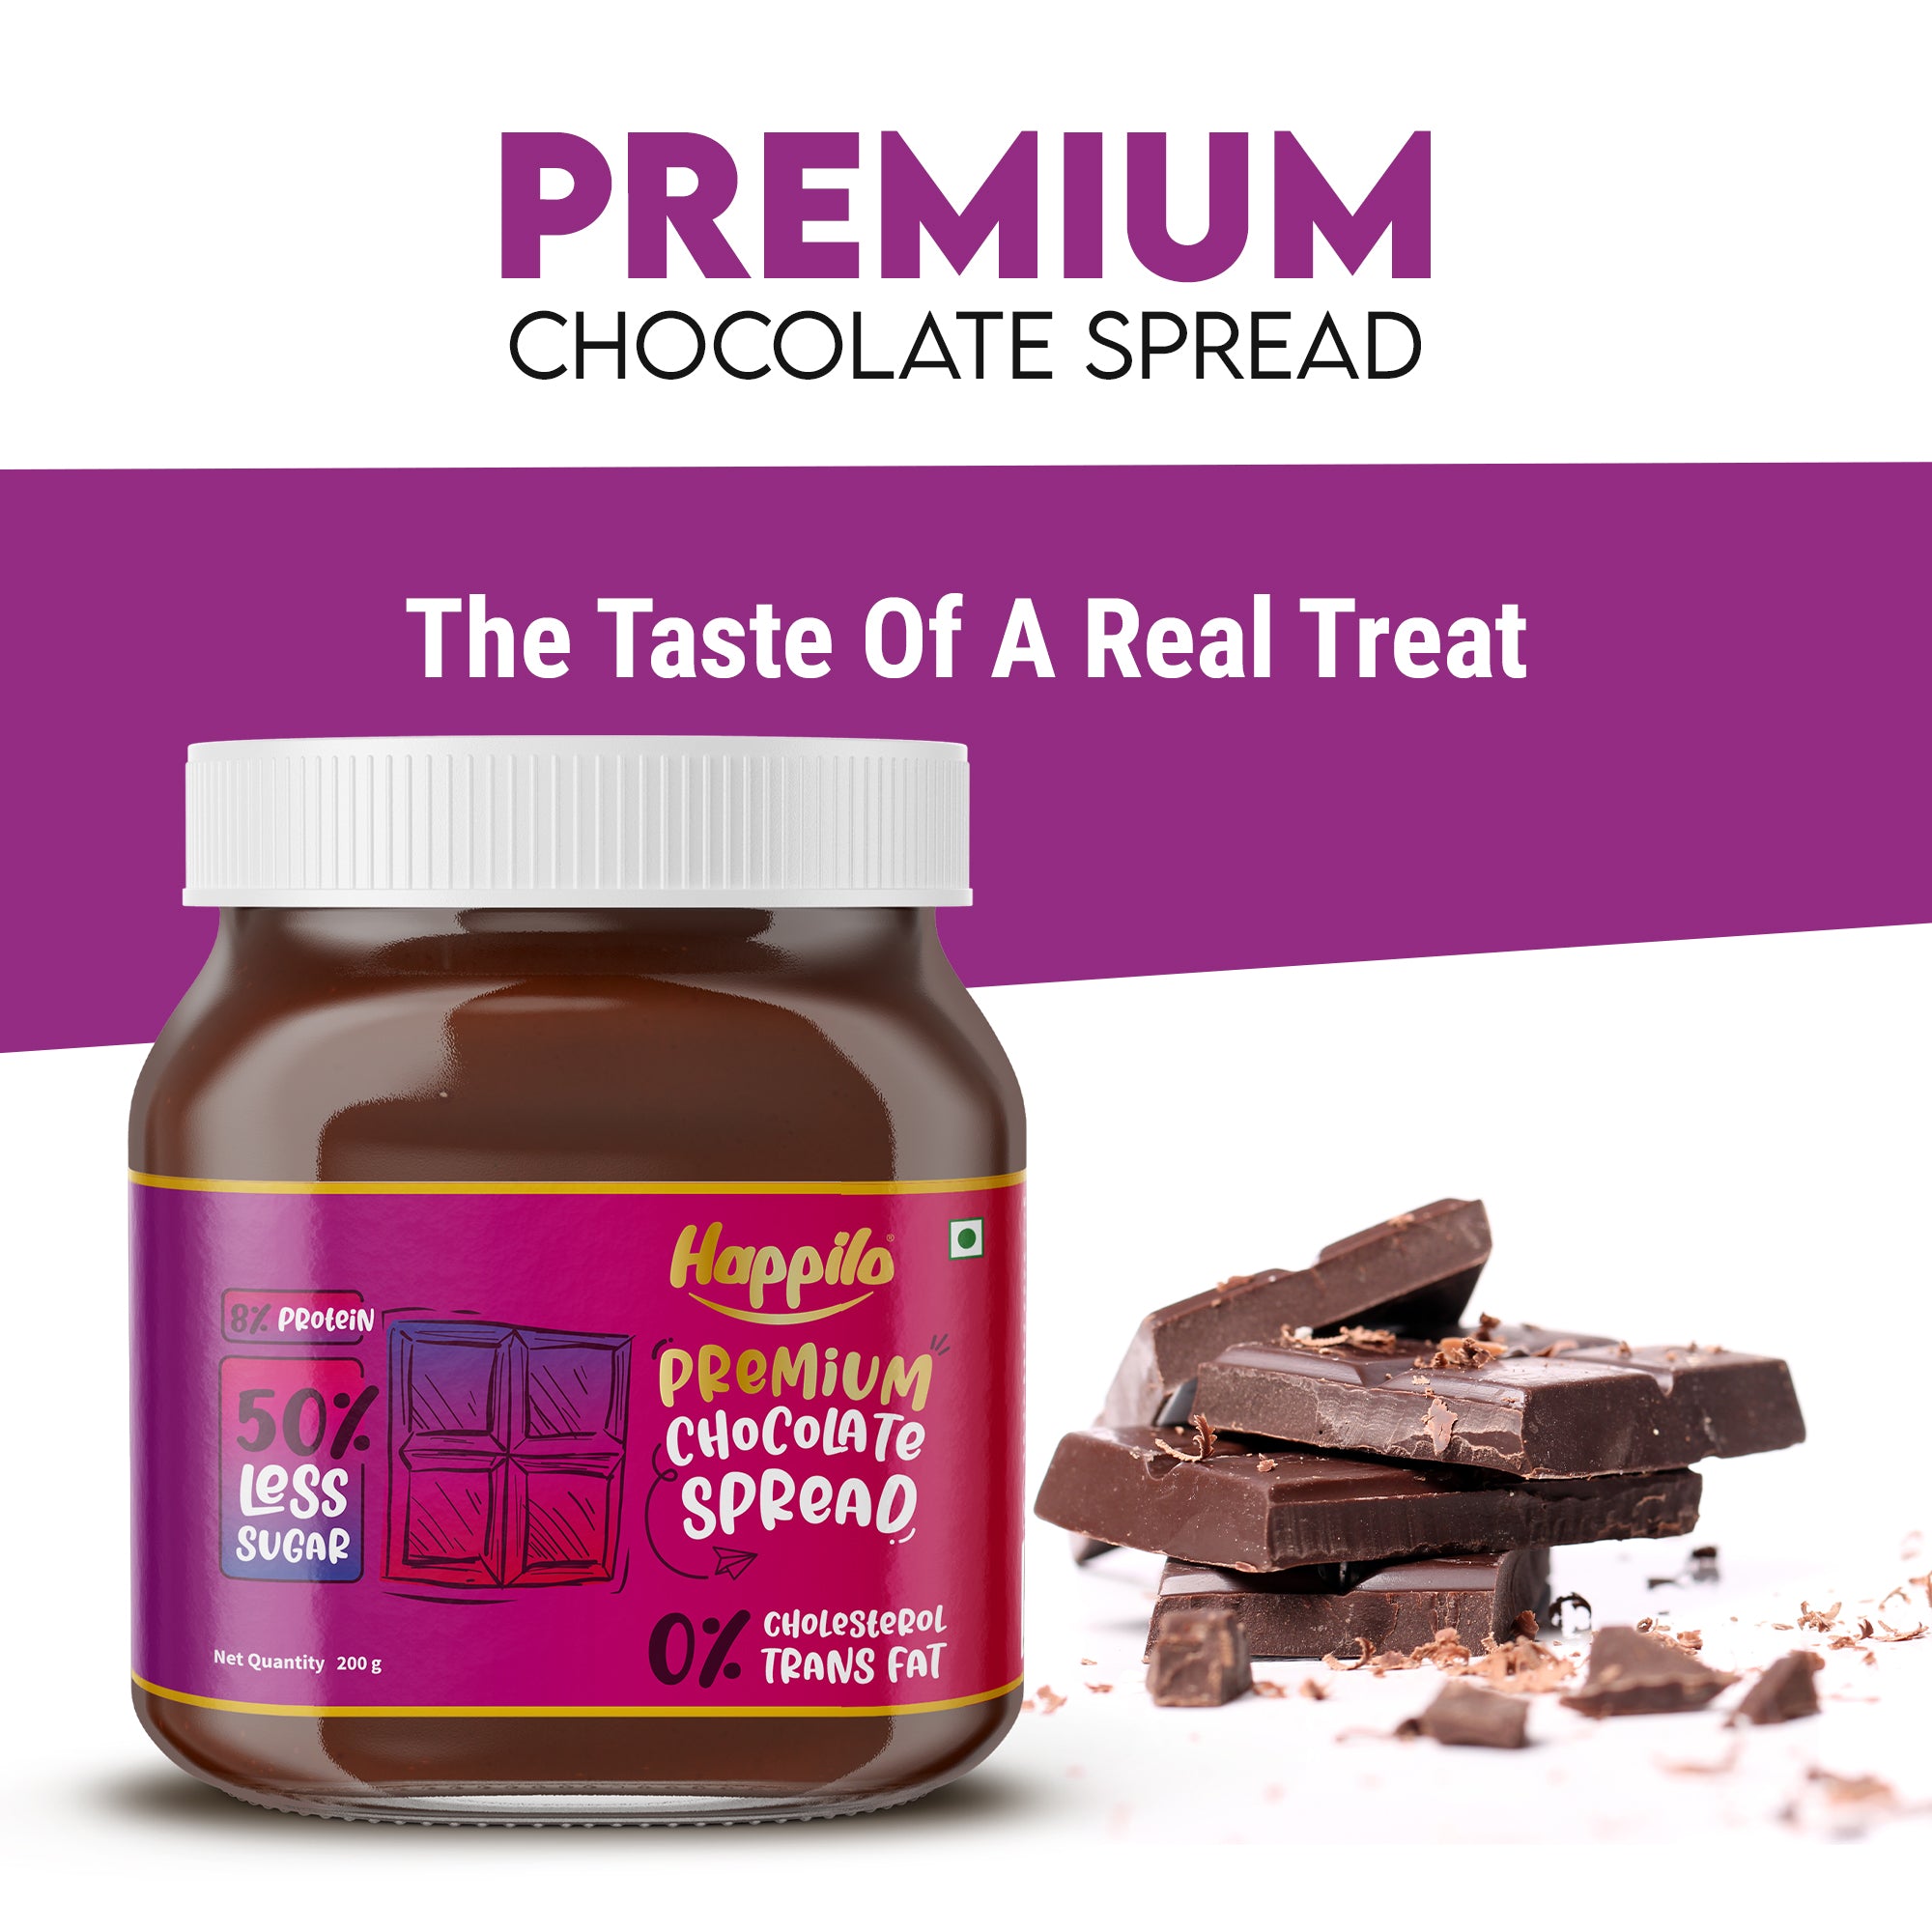 Happilo Premium Chocolate Spread 200g